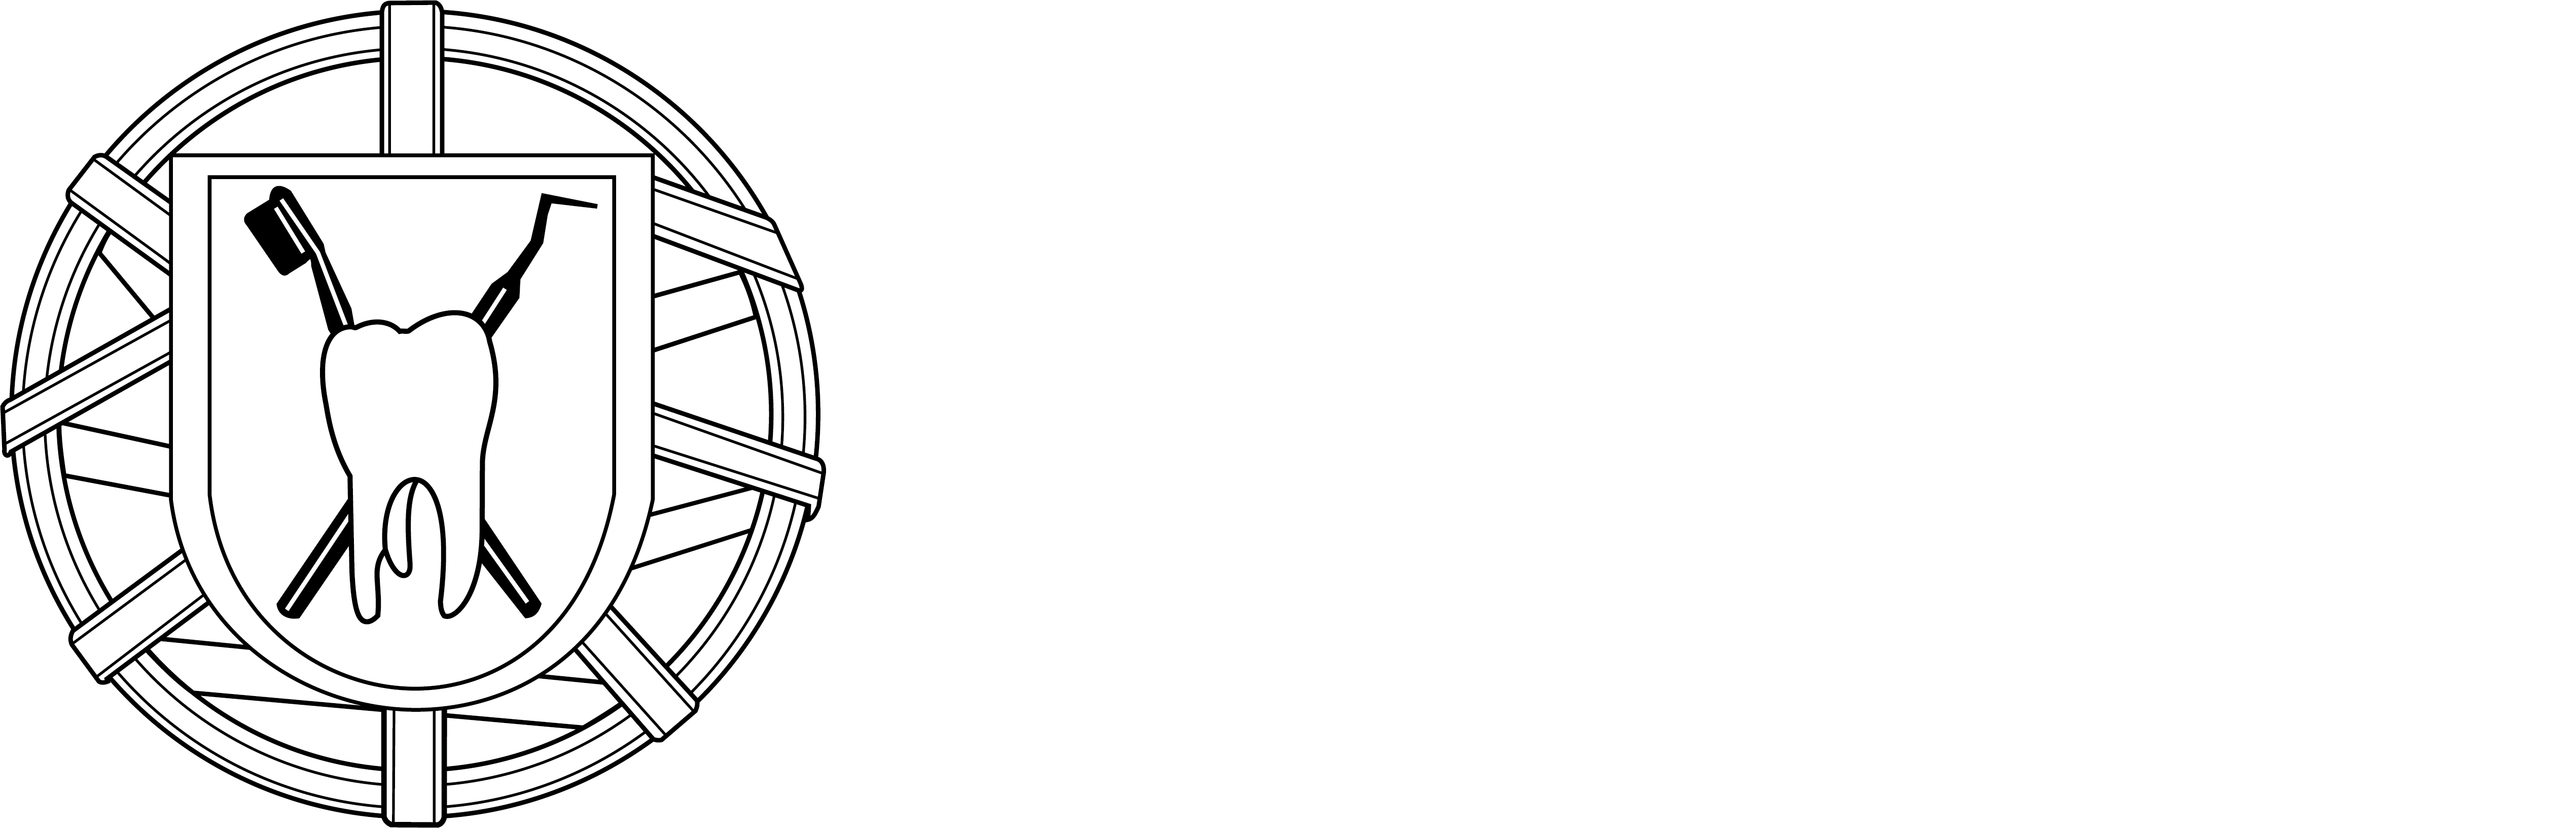 Associação Portuguesa de Higienistas Orais